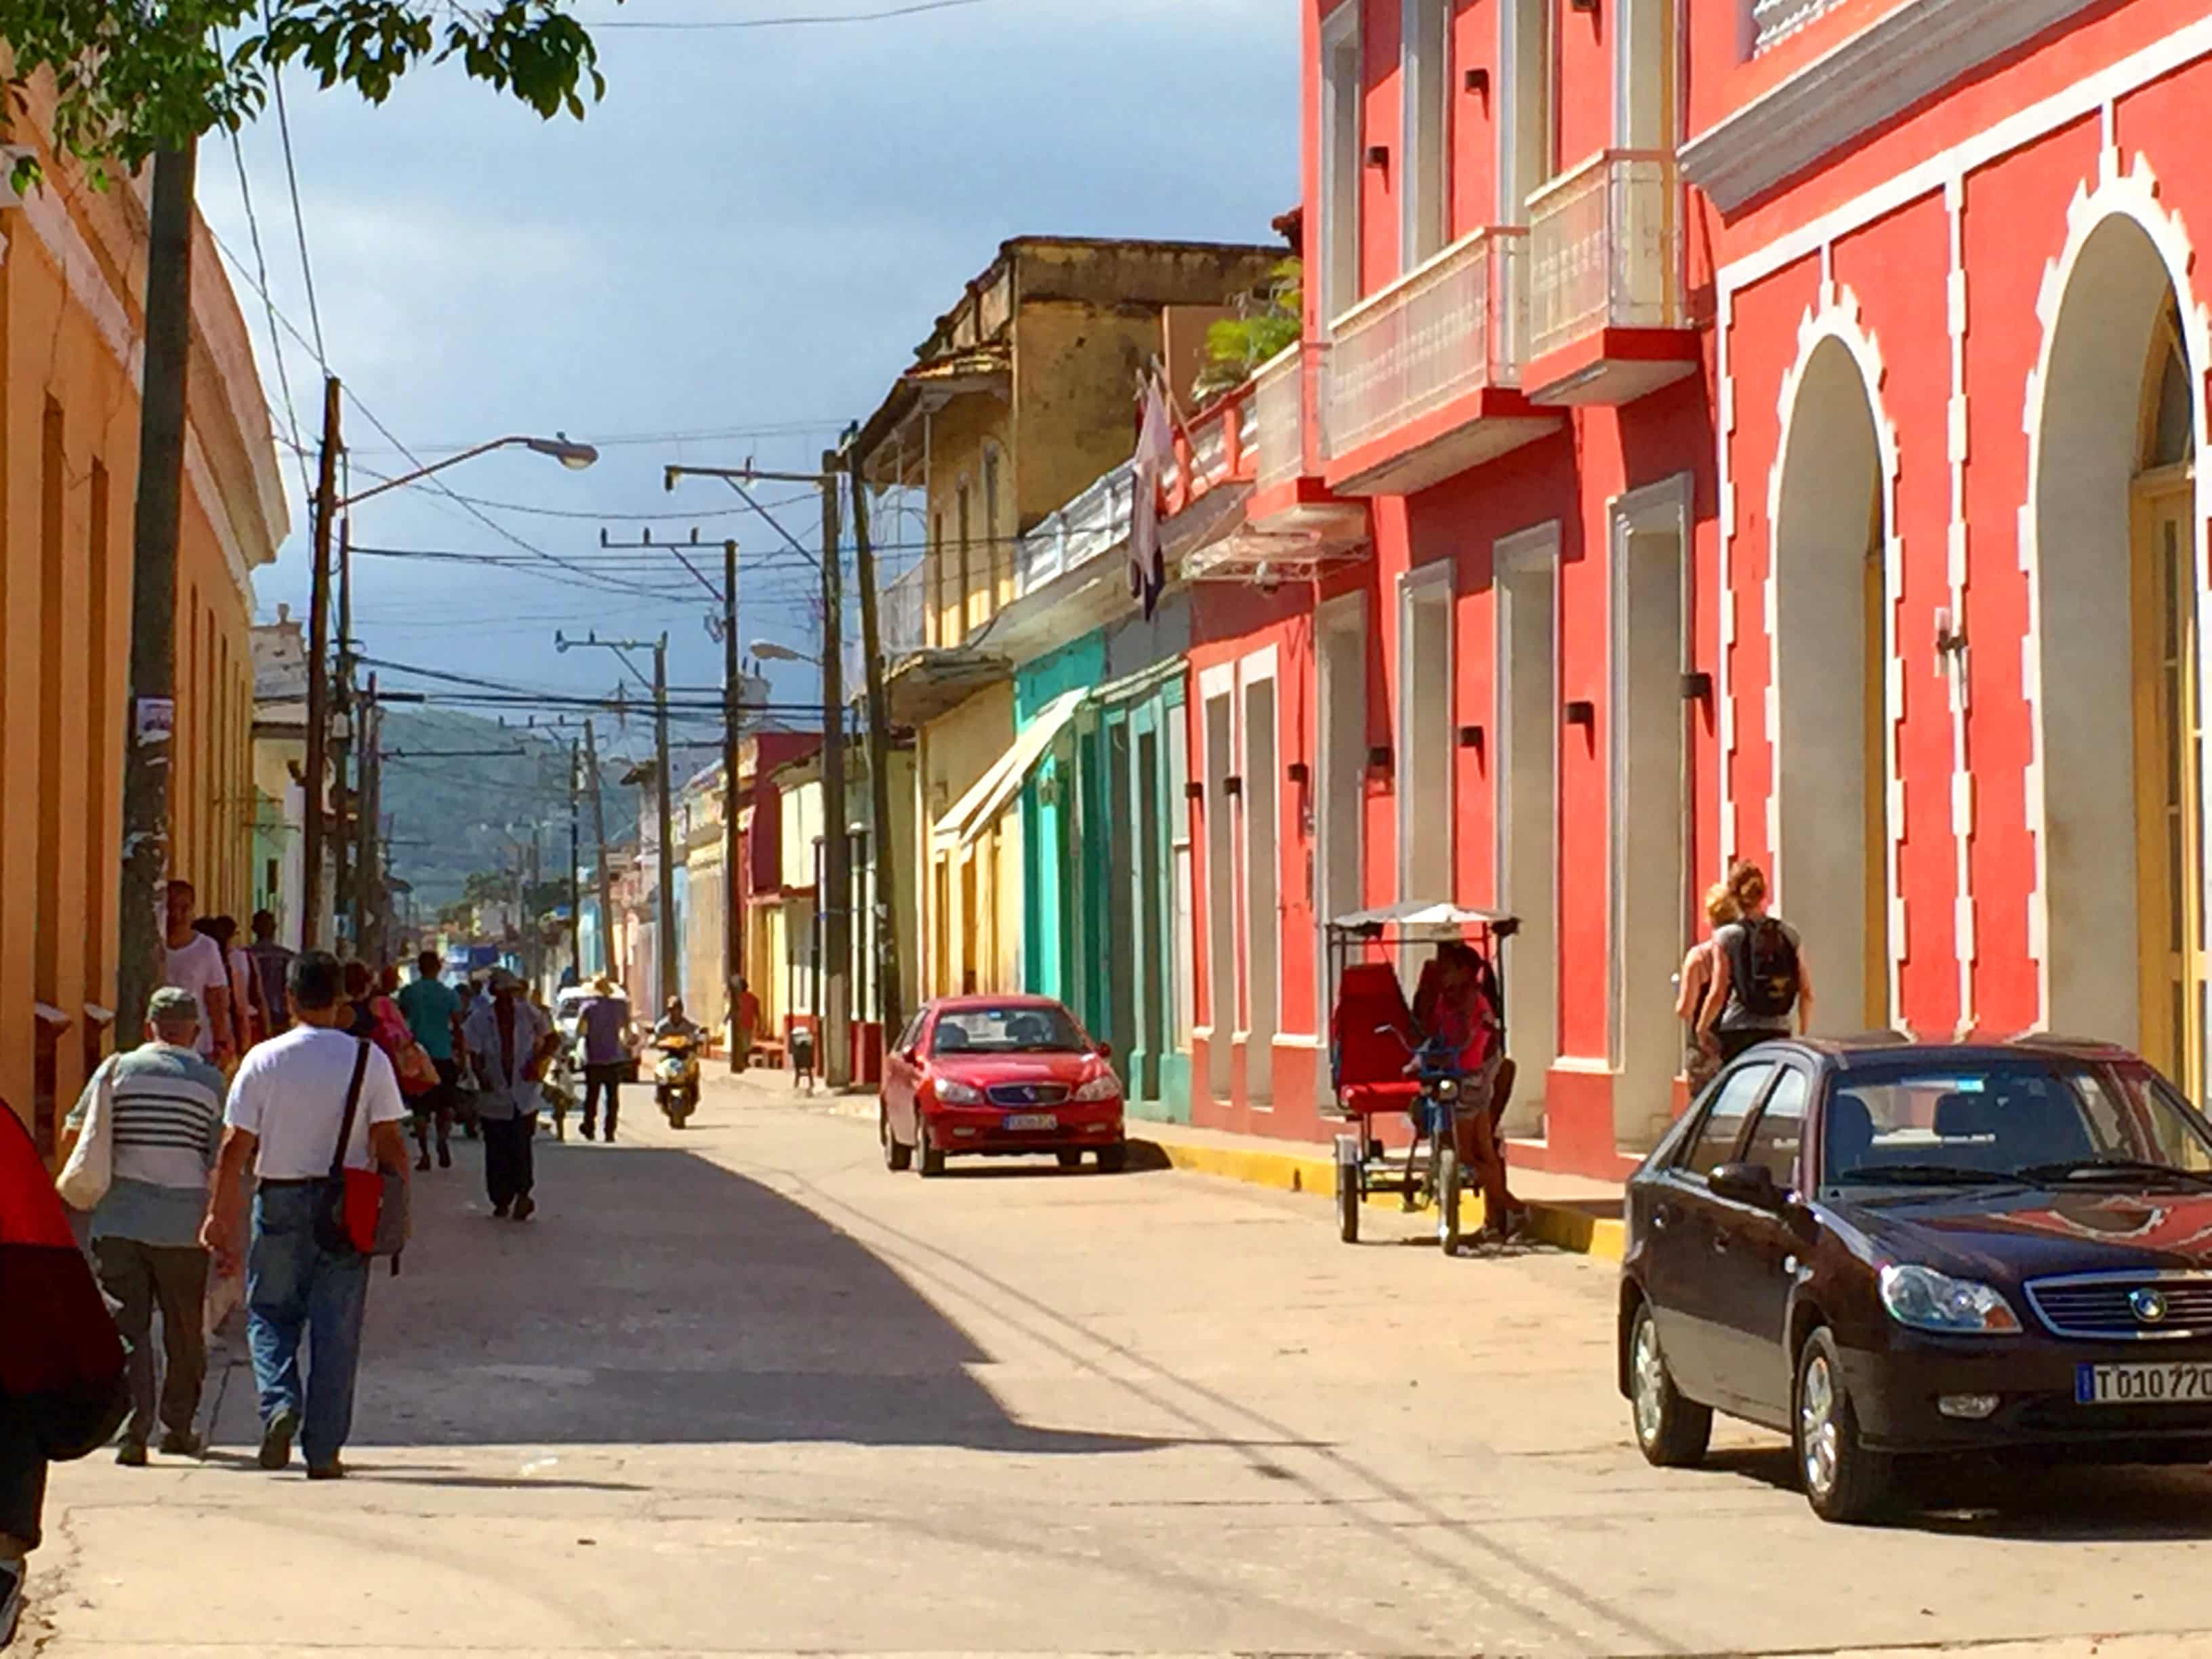 På en rejse til Cuba ser du mange charmerende byer